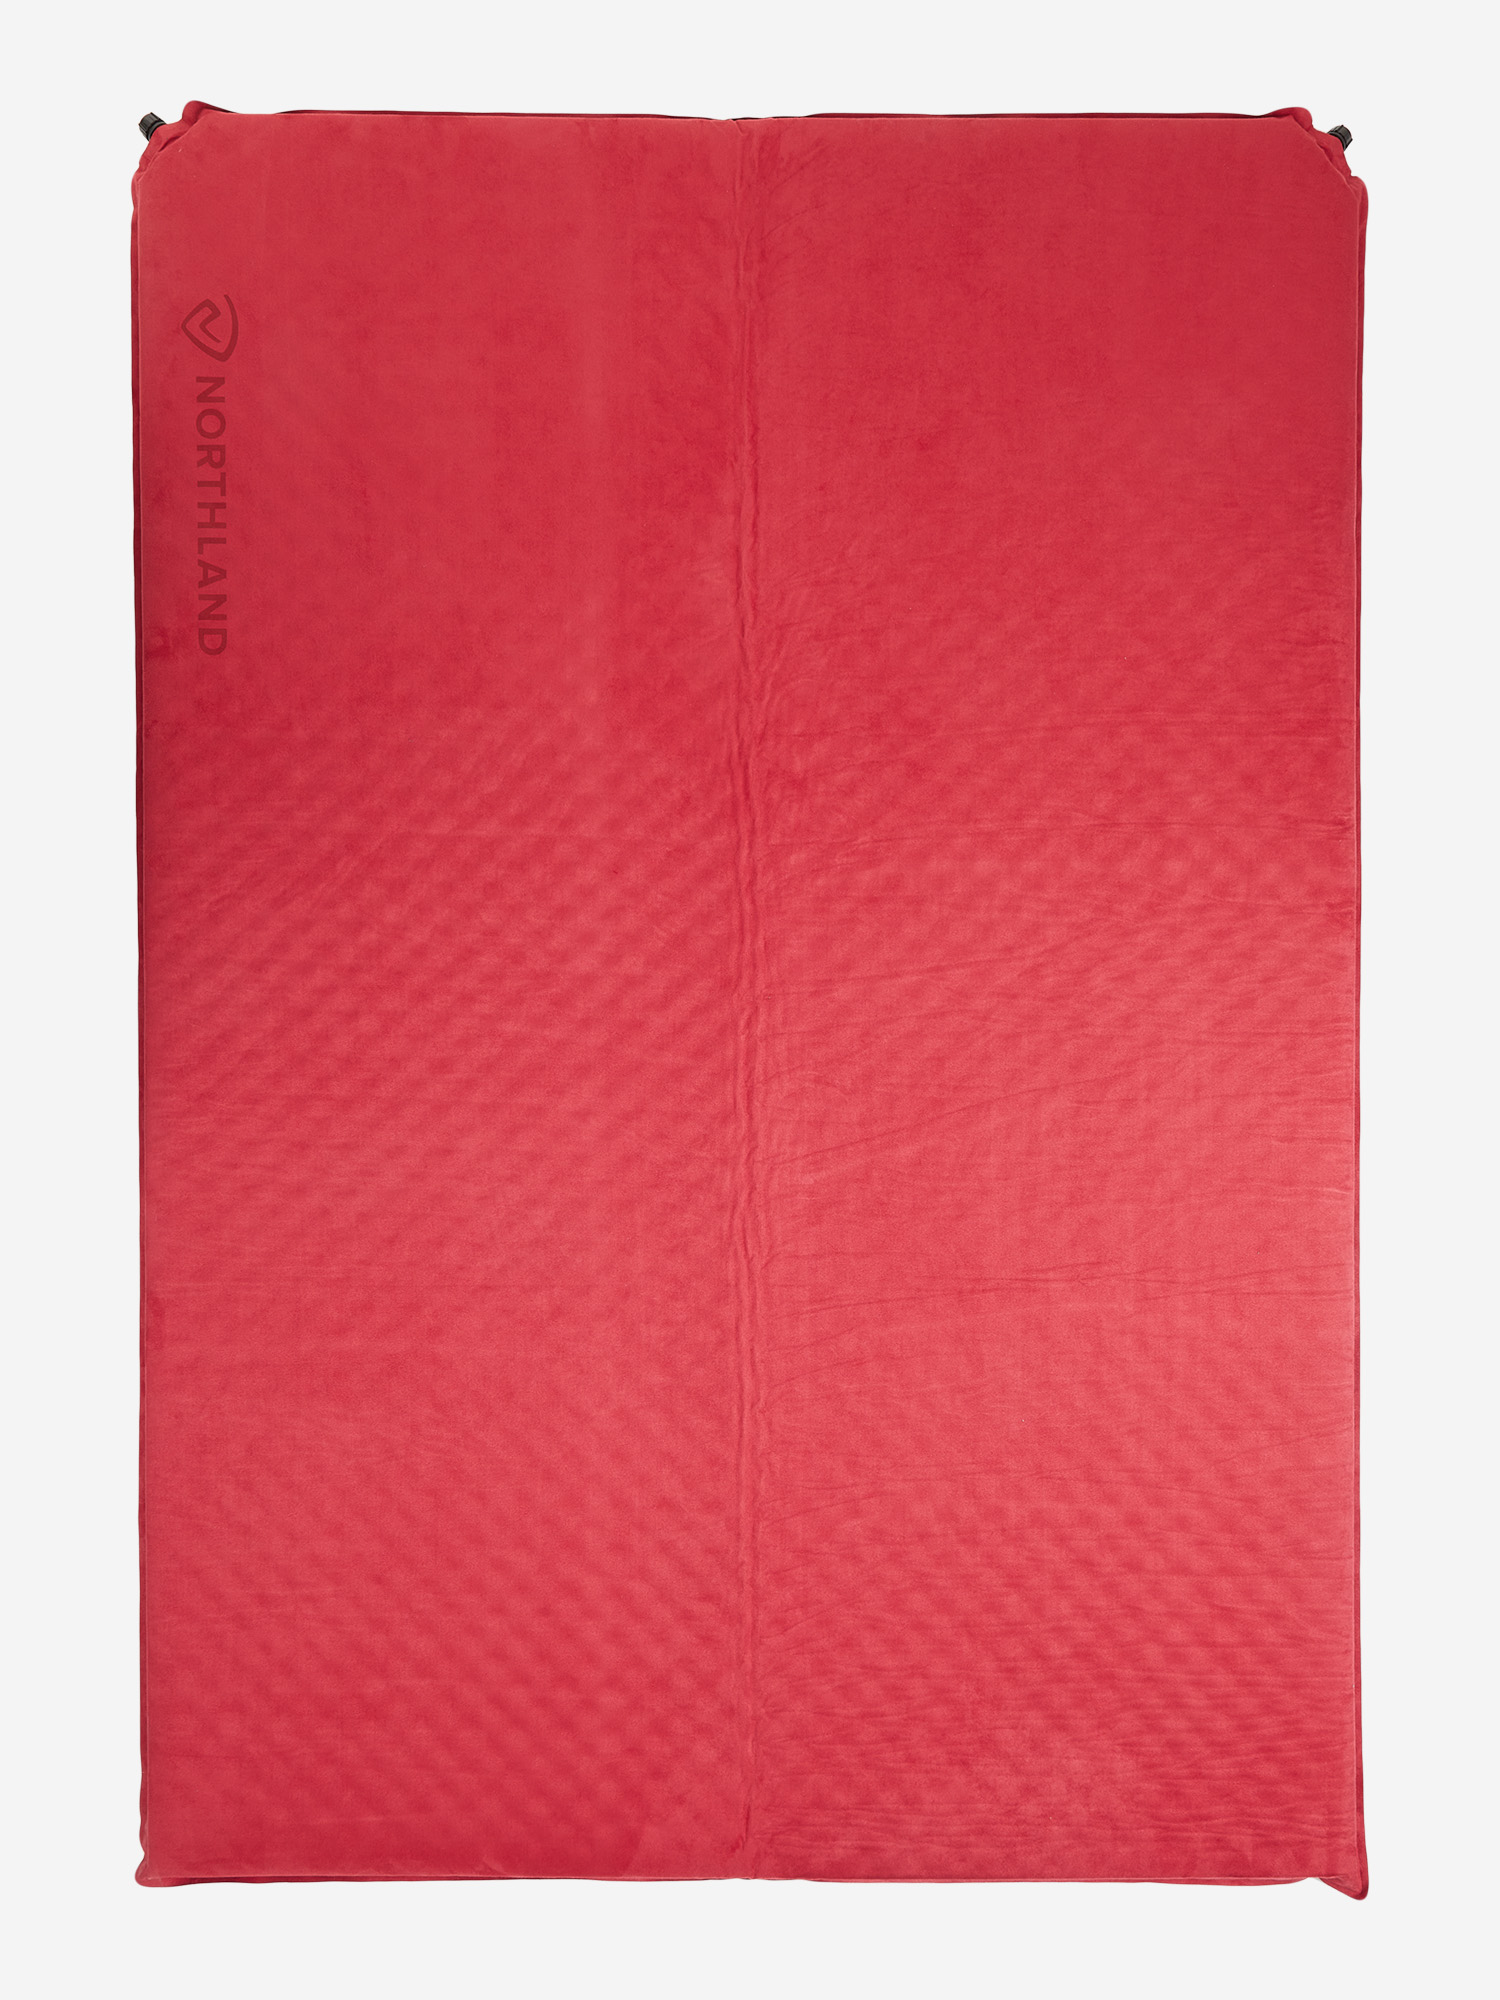 Коврик самонадувающийся Northland, 188 см, Красный коврик самонадувающийся northland 188 см красный